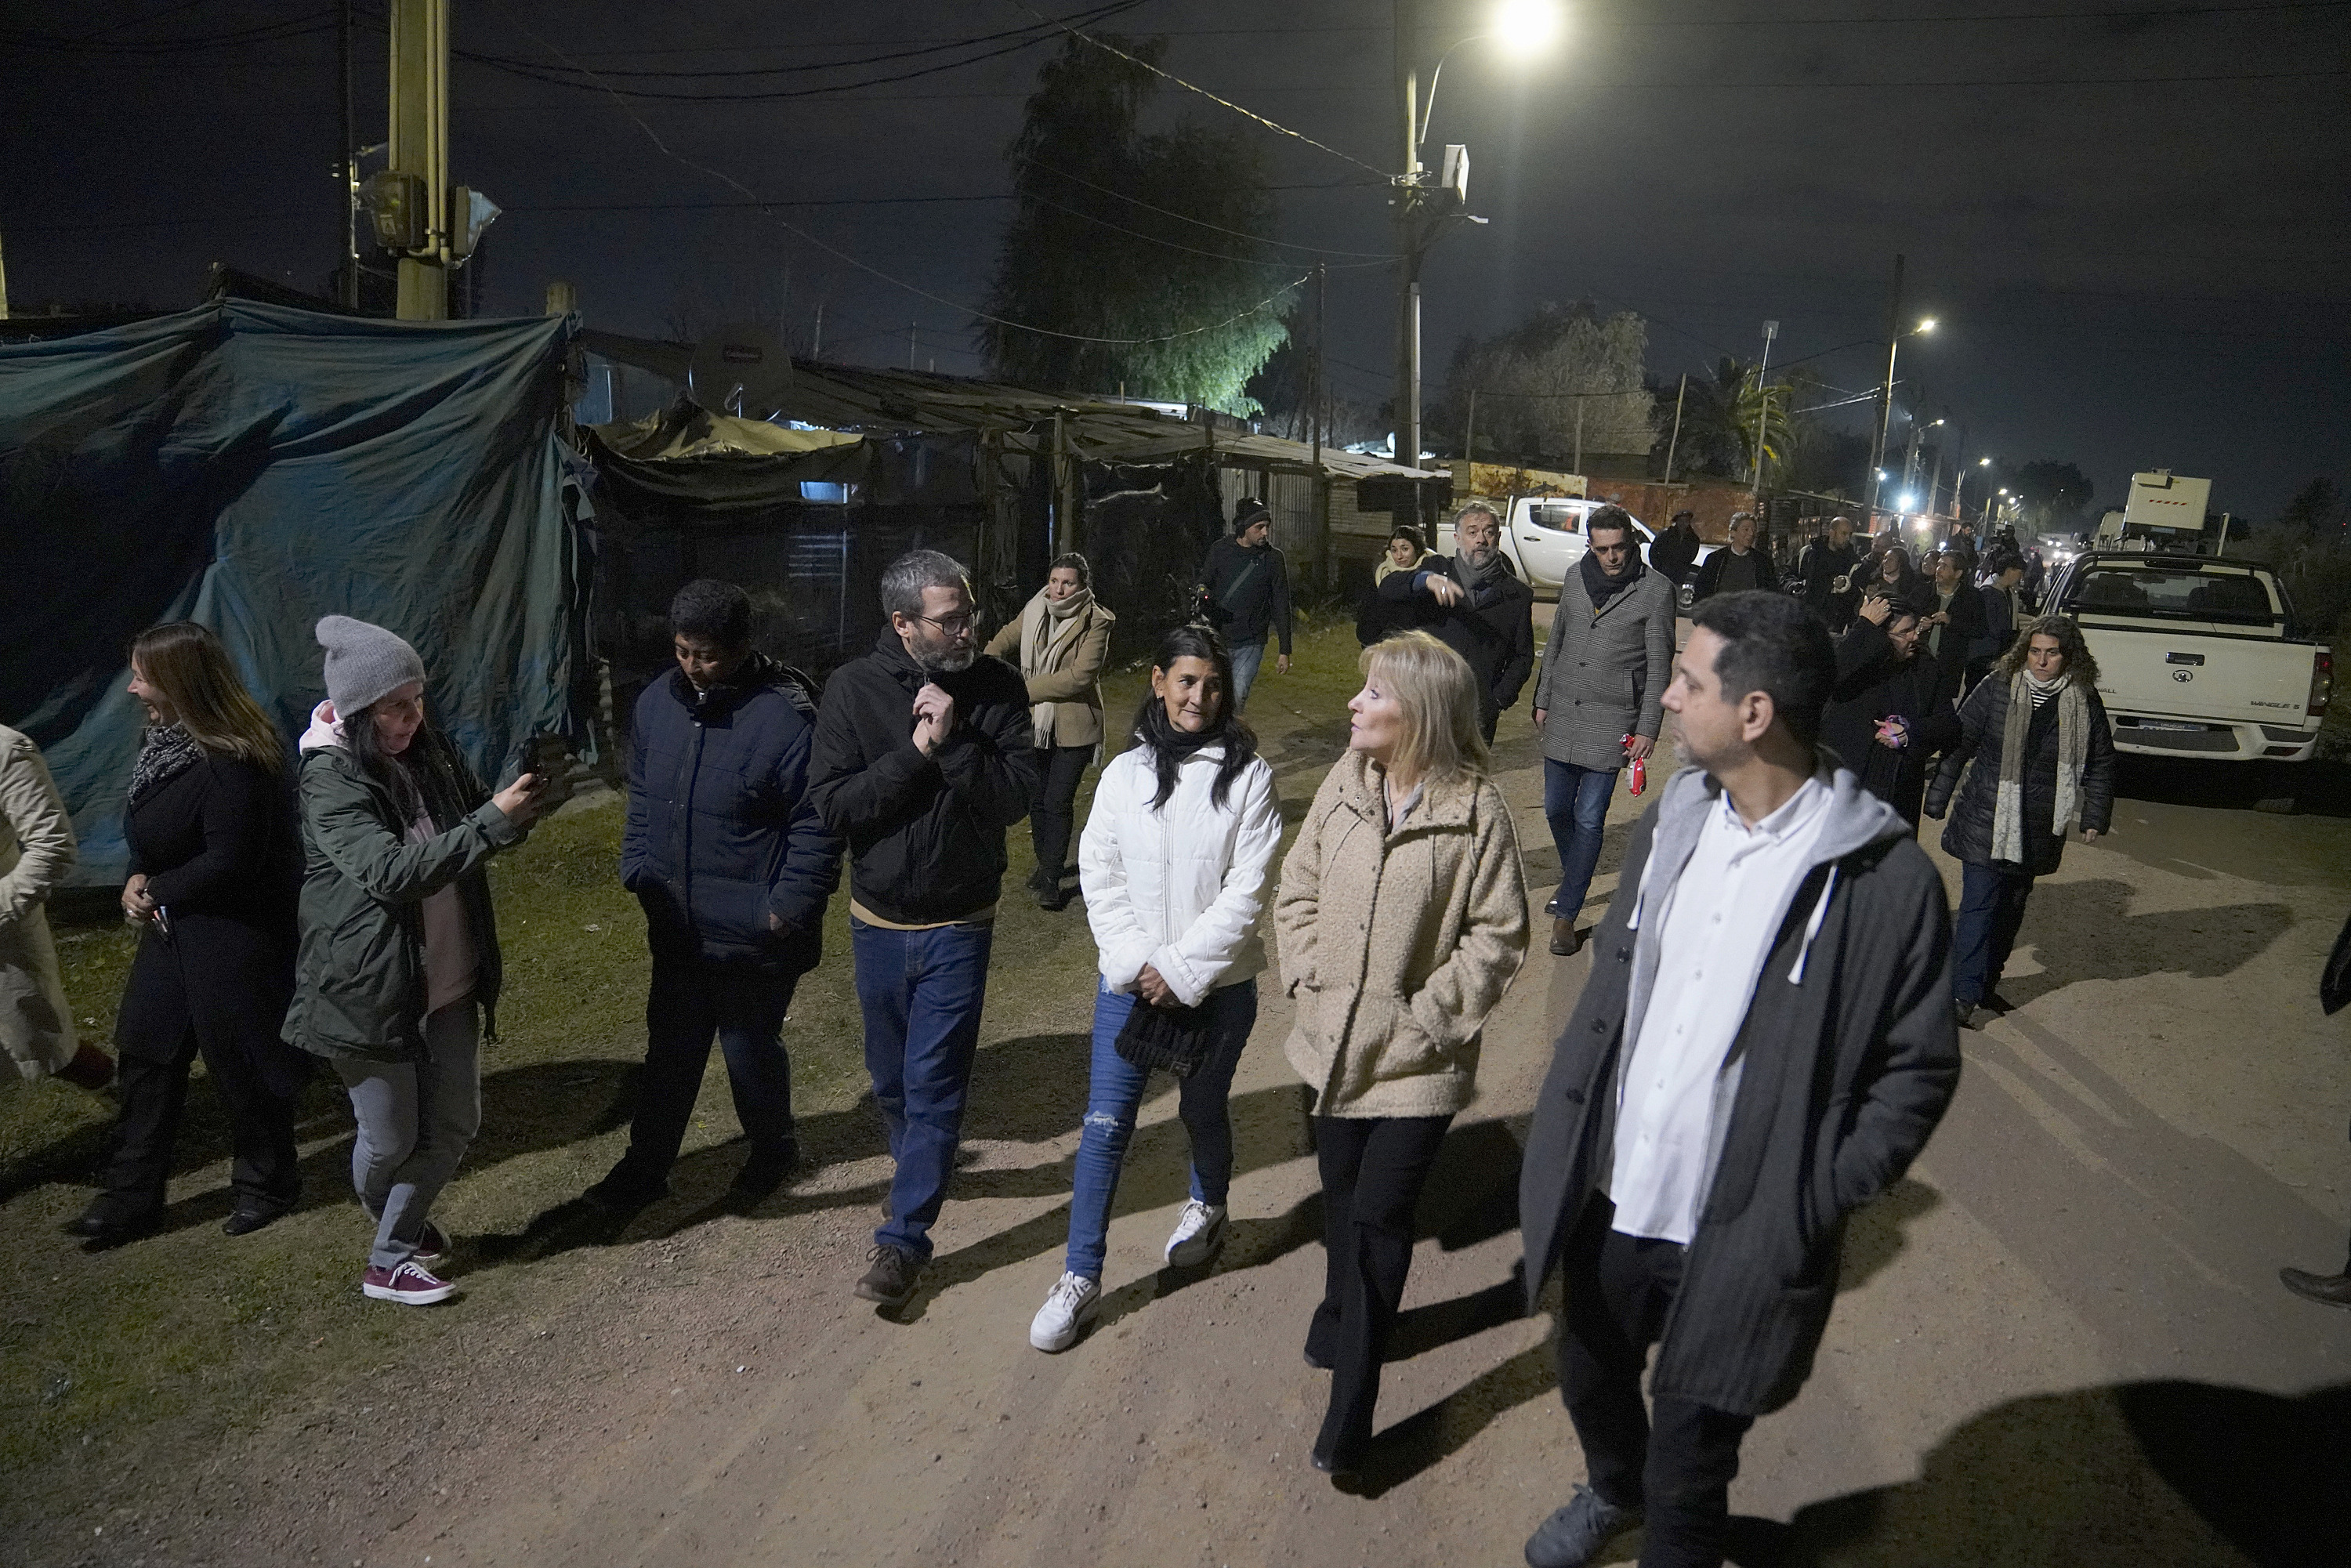 Intervención de Montevideo Avanza en Iluminación en el barrio 23 de diciembre